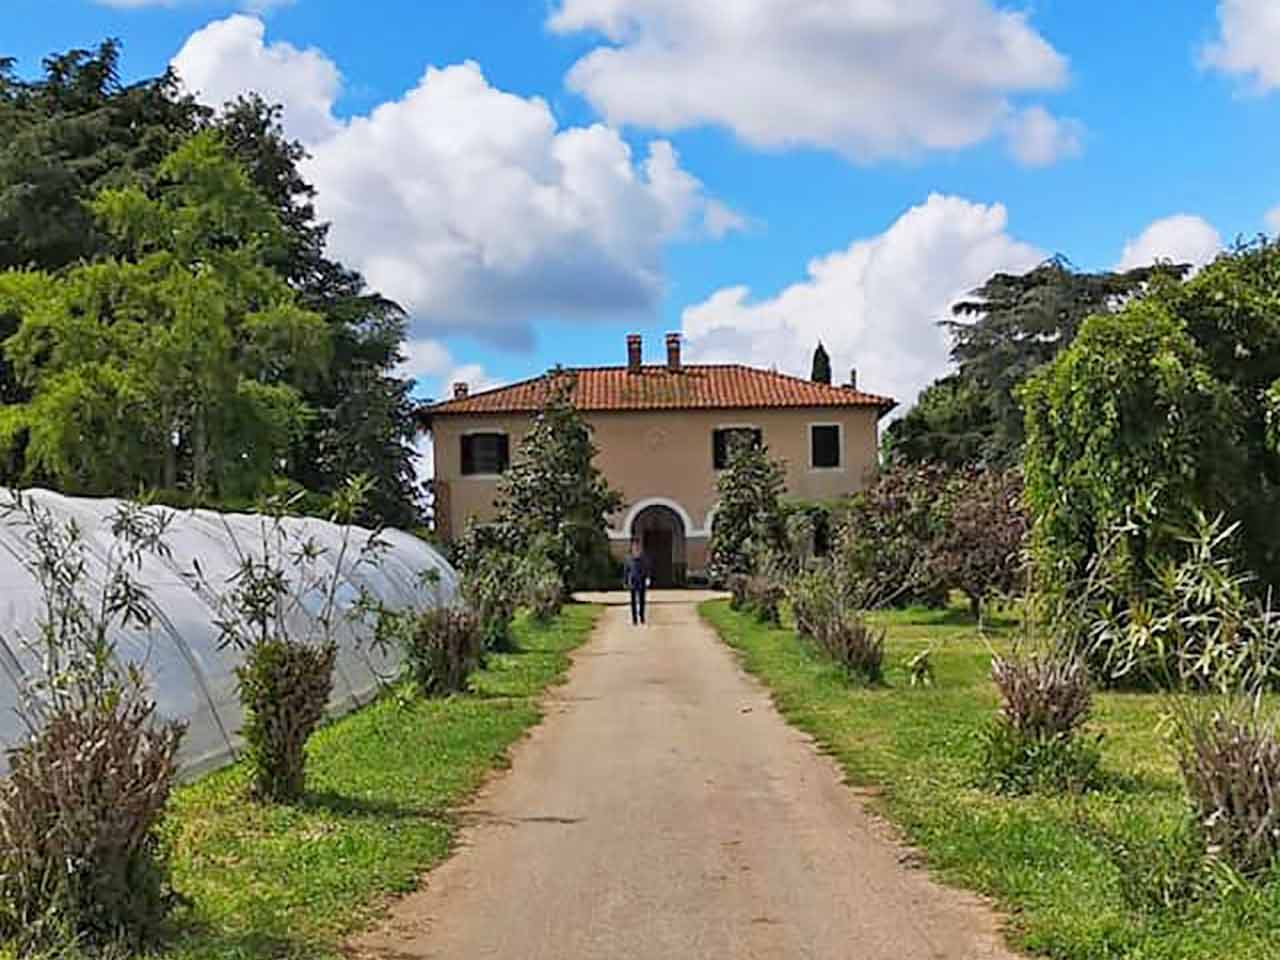 Azienda Agricola Il Casale degli Oleandri - Top 10 agriturismi nel Lazio